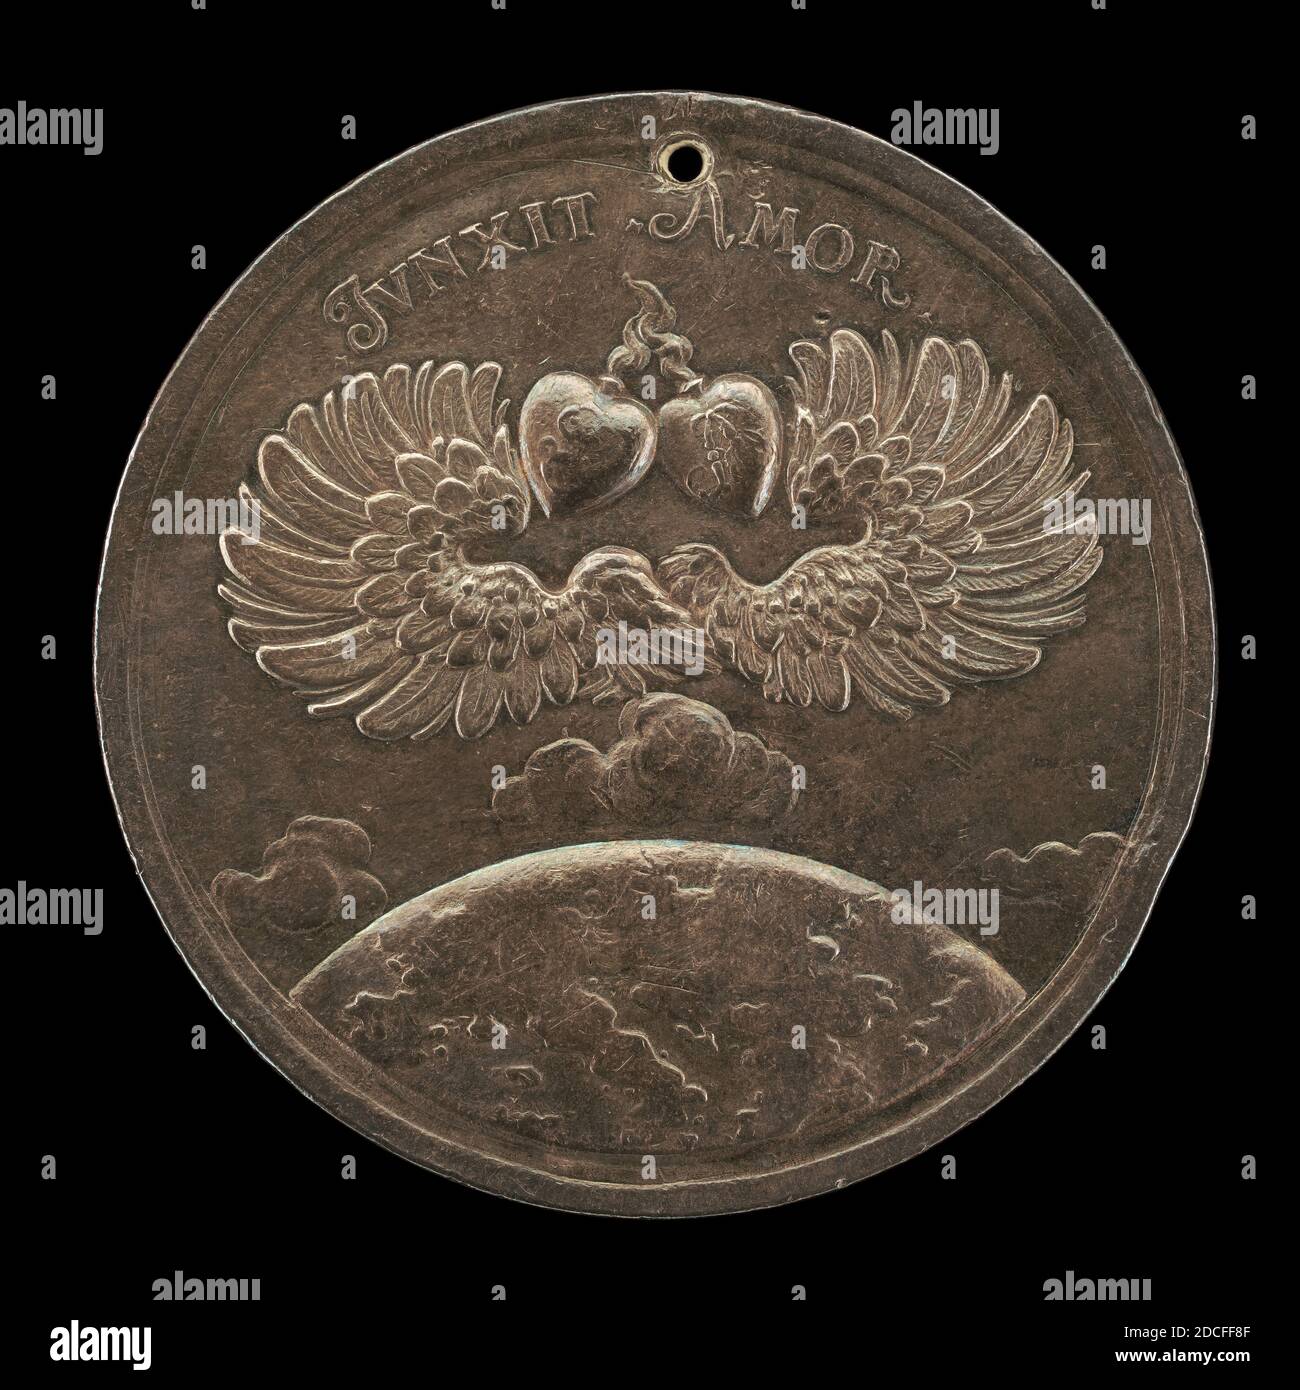 Johann Georg Seidlitz, (medallista), austriaco, activo c. 1699 - c. 1730, Uniting Europe, 1705, fundición de plata, total (diámetro): 5.85 cm (2 5/16 pulg.), peso bruto: 68.75 gr (0.152 lb.), eje: 12:00 Foto de stock